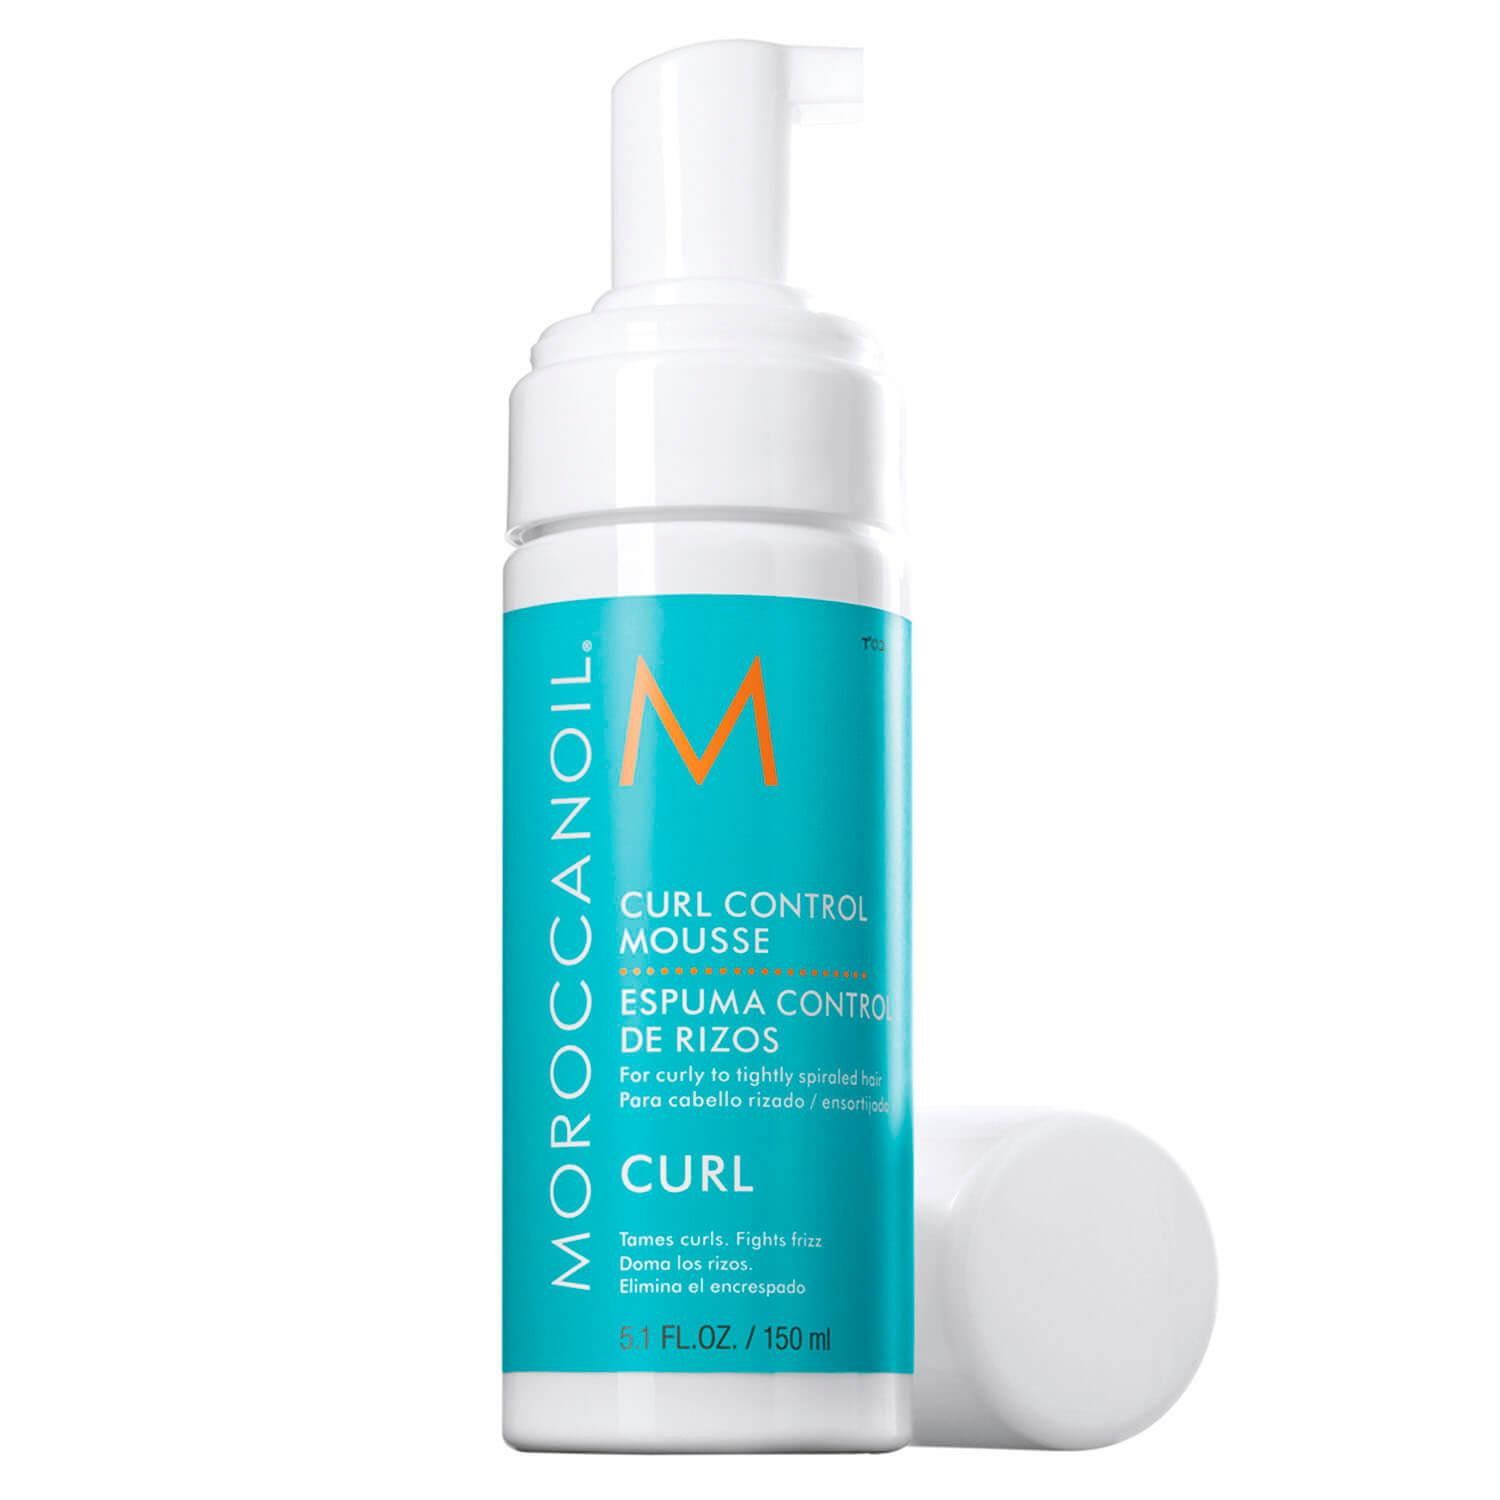 Moroccanoil - Curl Control Mousse